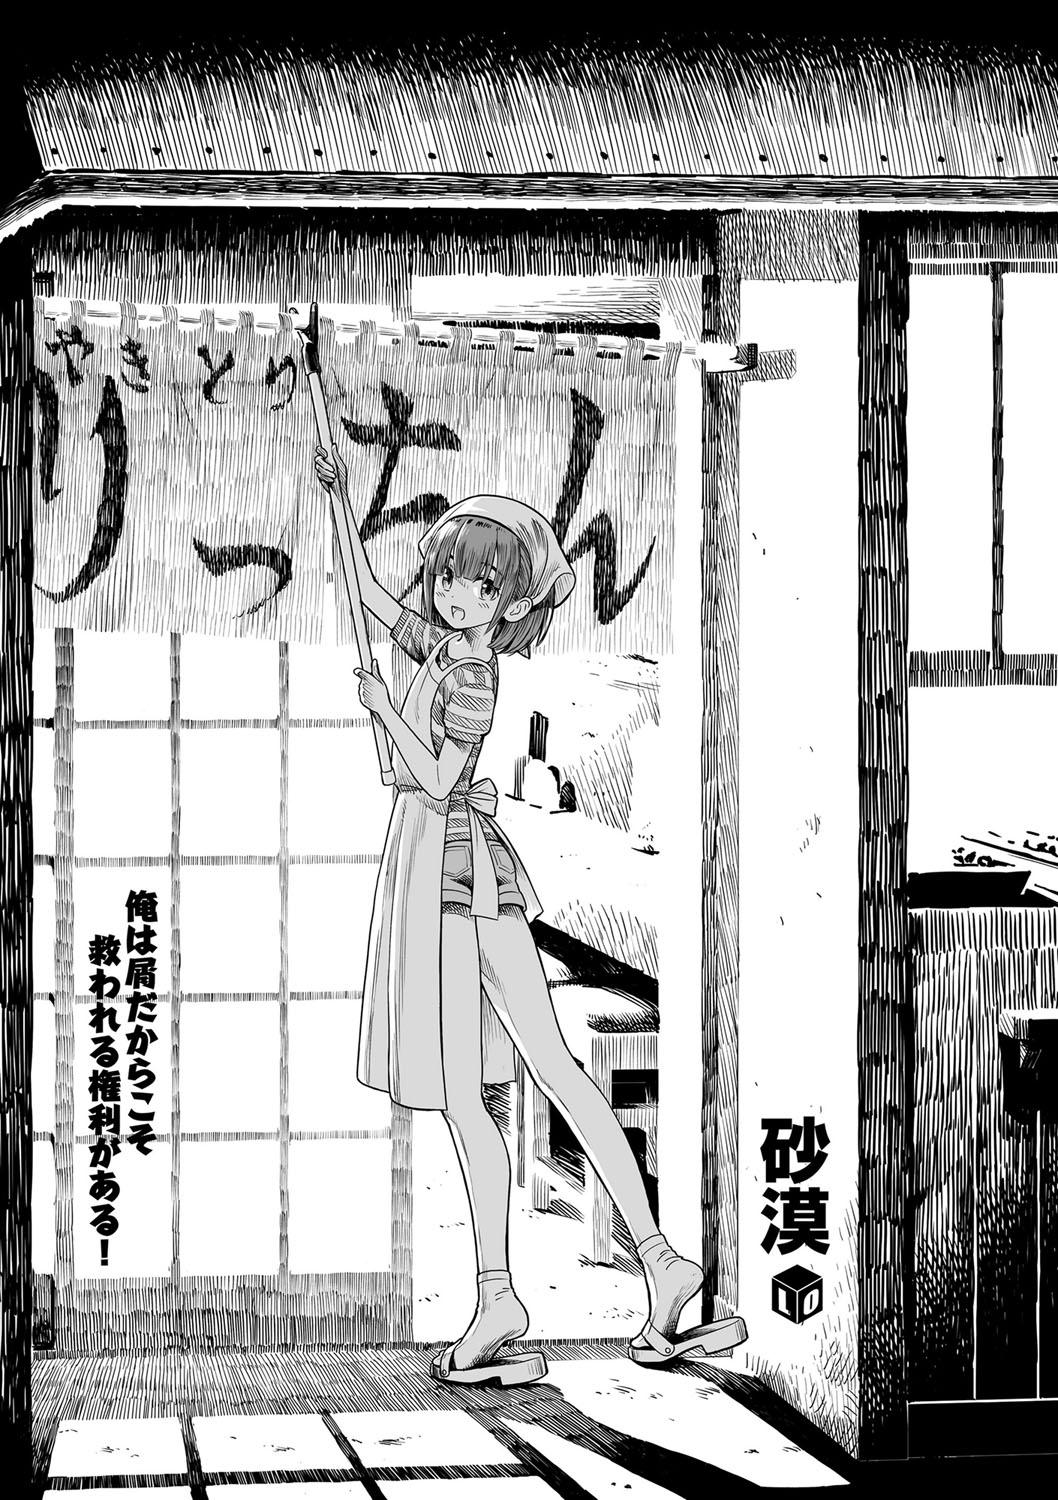 Teenfuns Ore wa Kuzu dakara koso Sukuwareru Kenri ga Aru! Body - Page 4